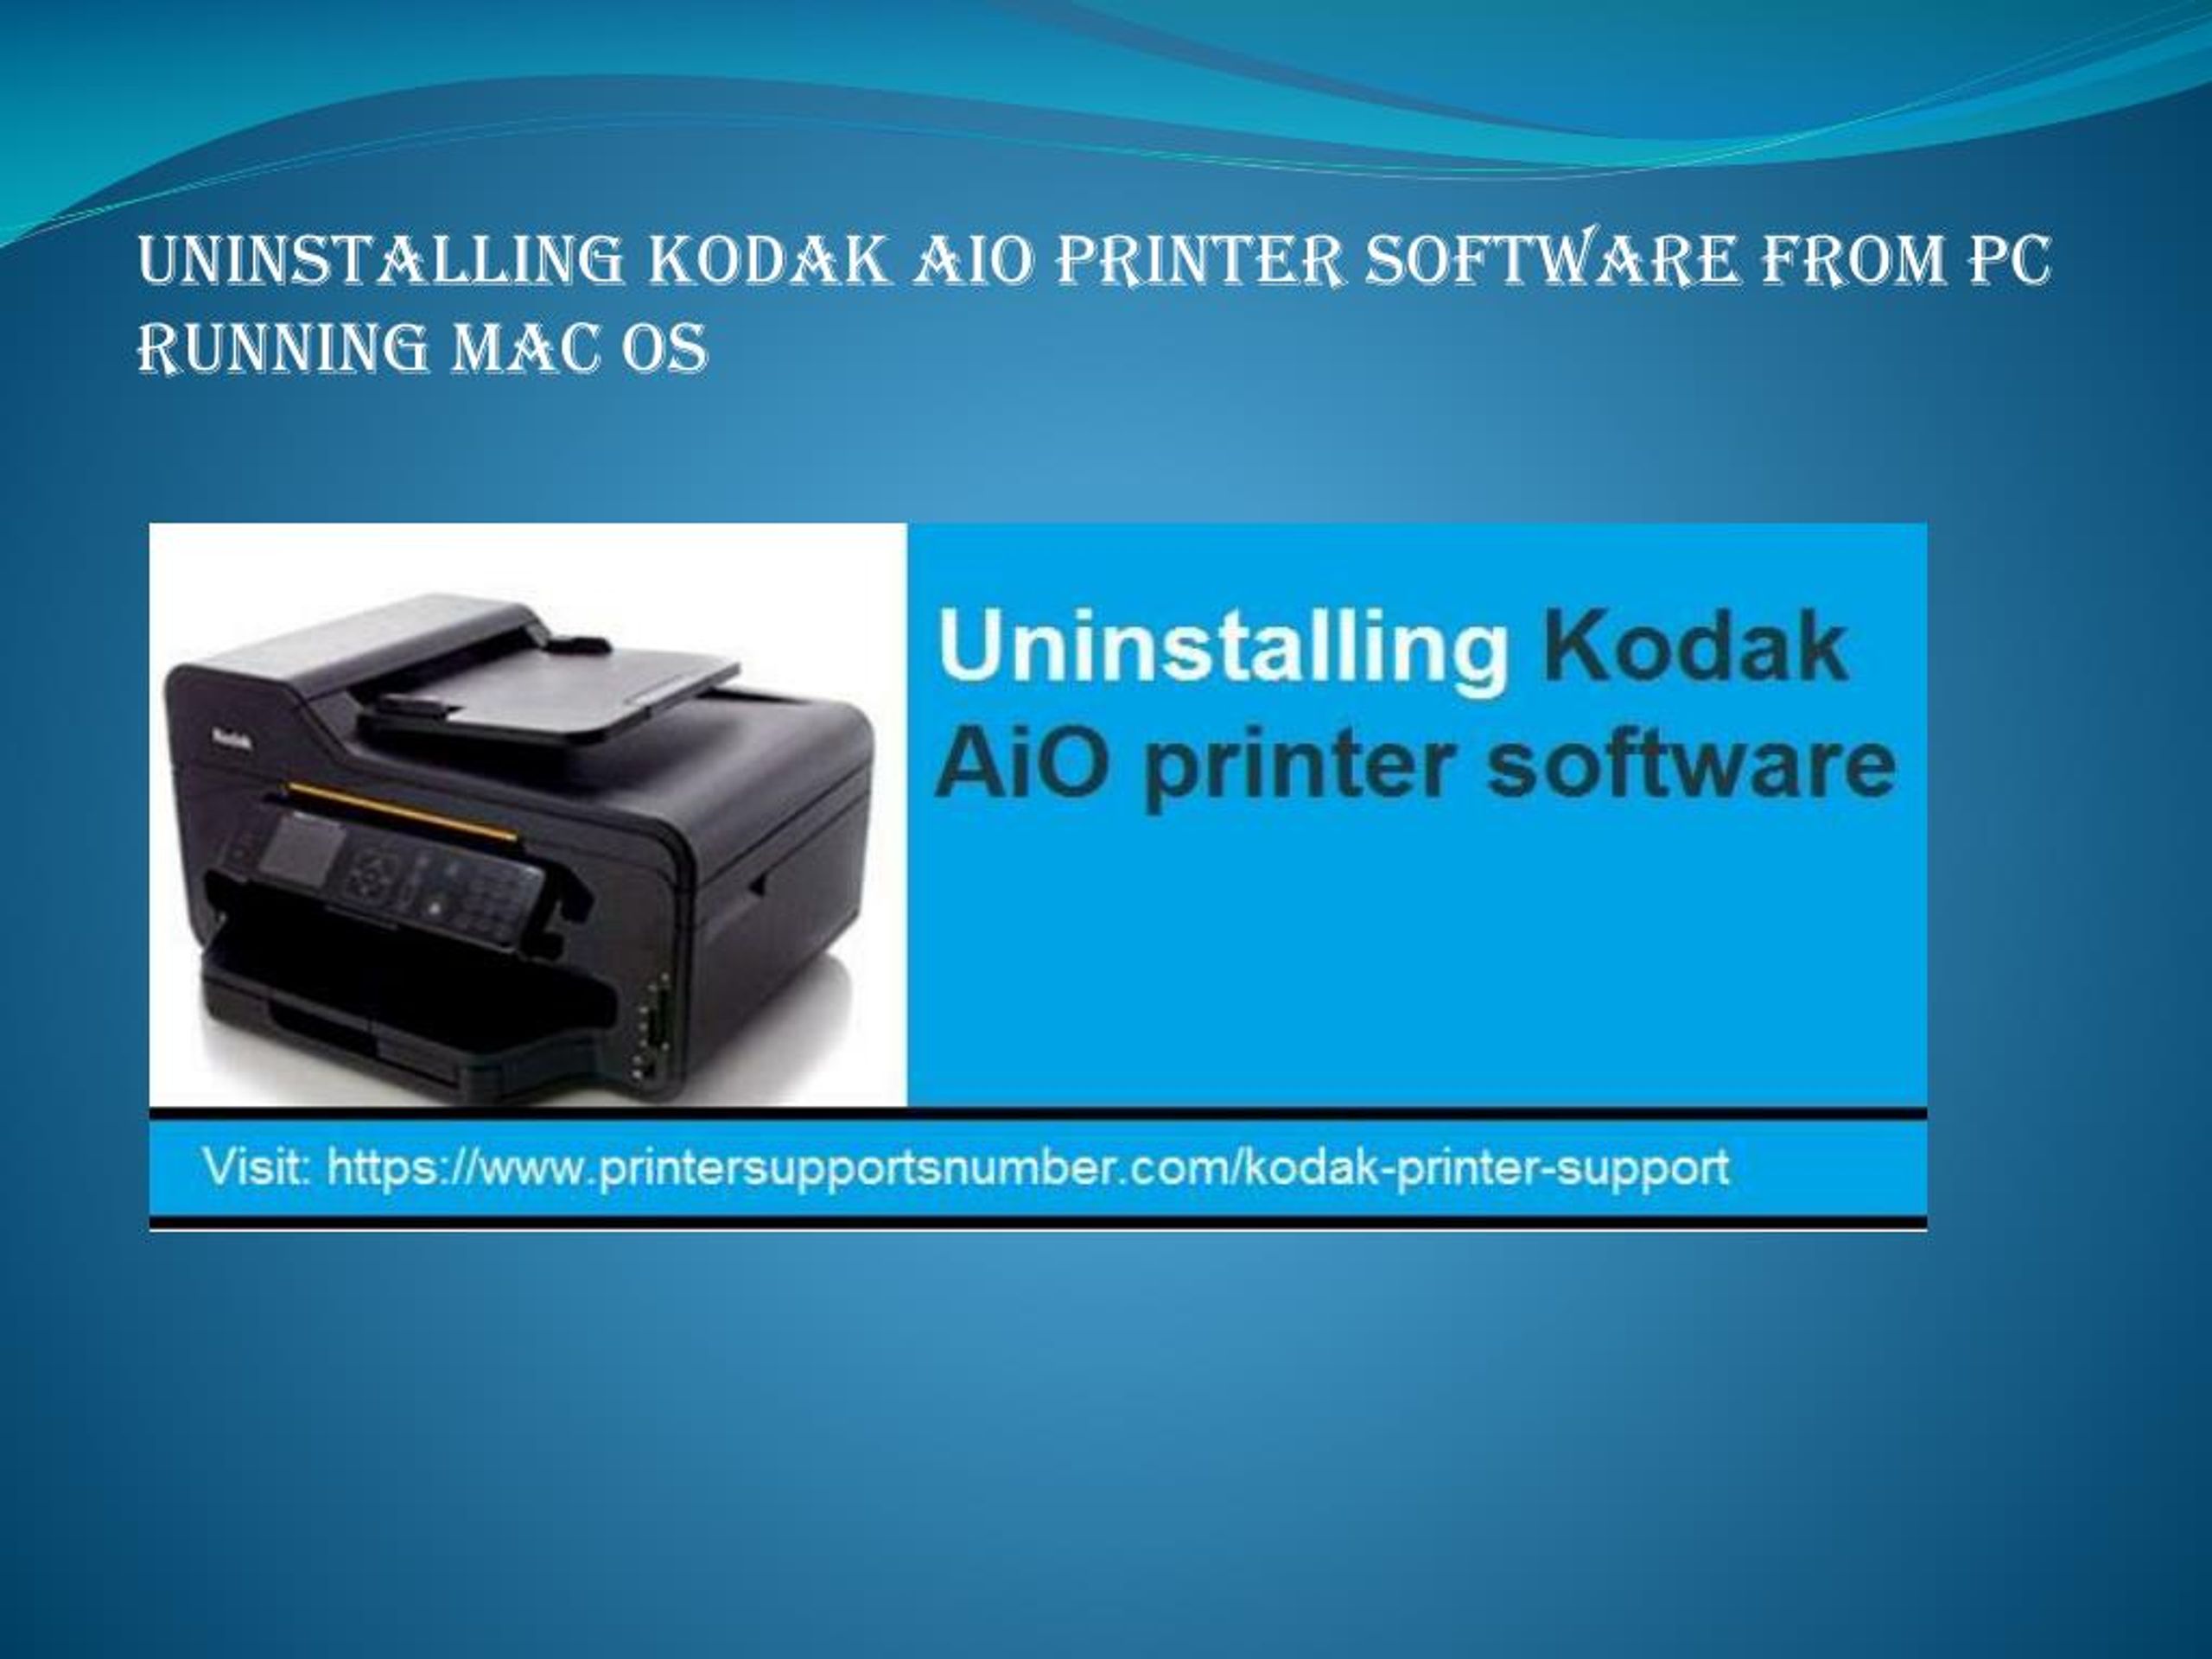 kodak printer software for mac